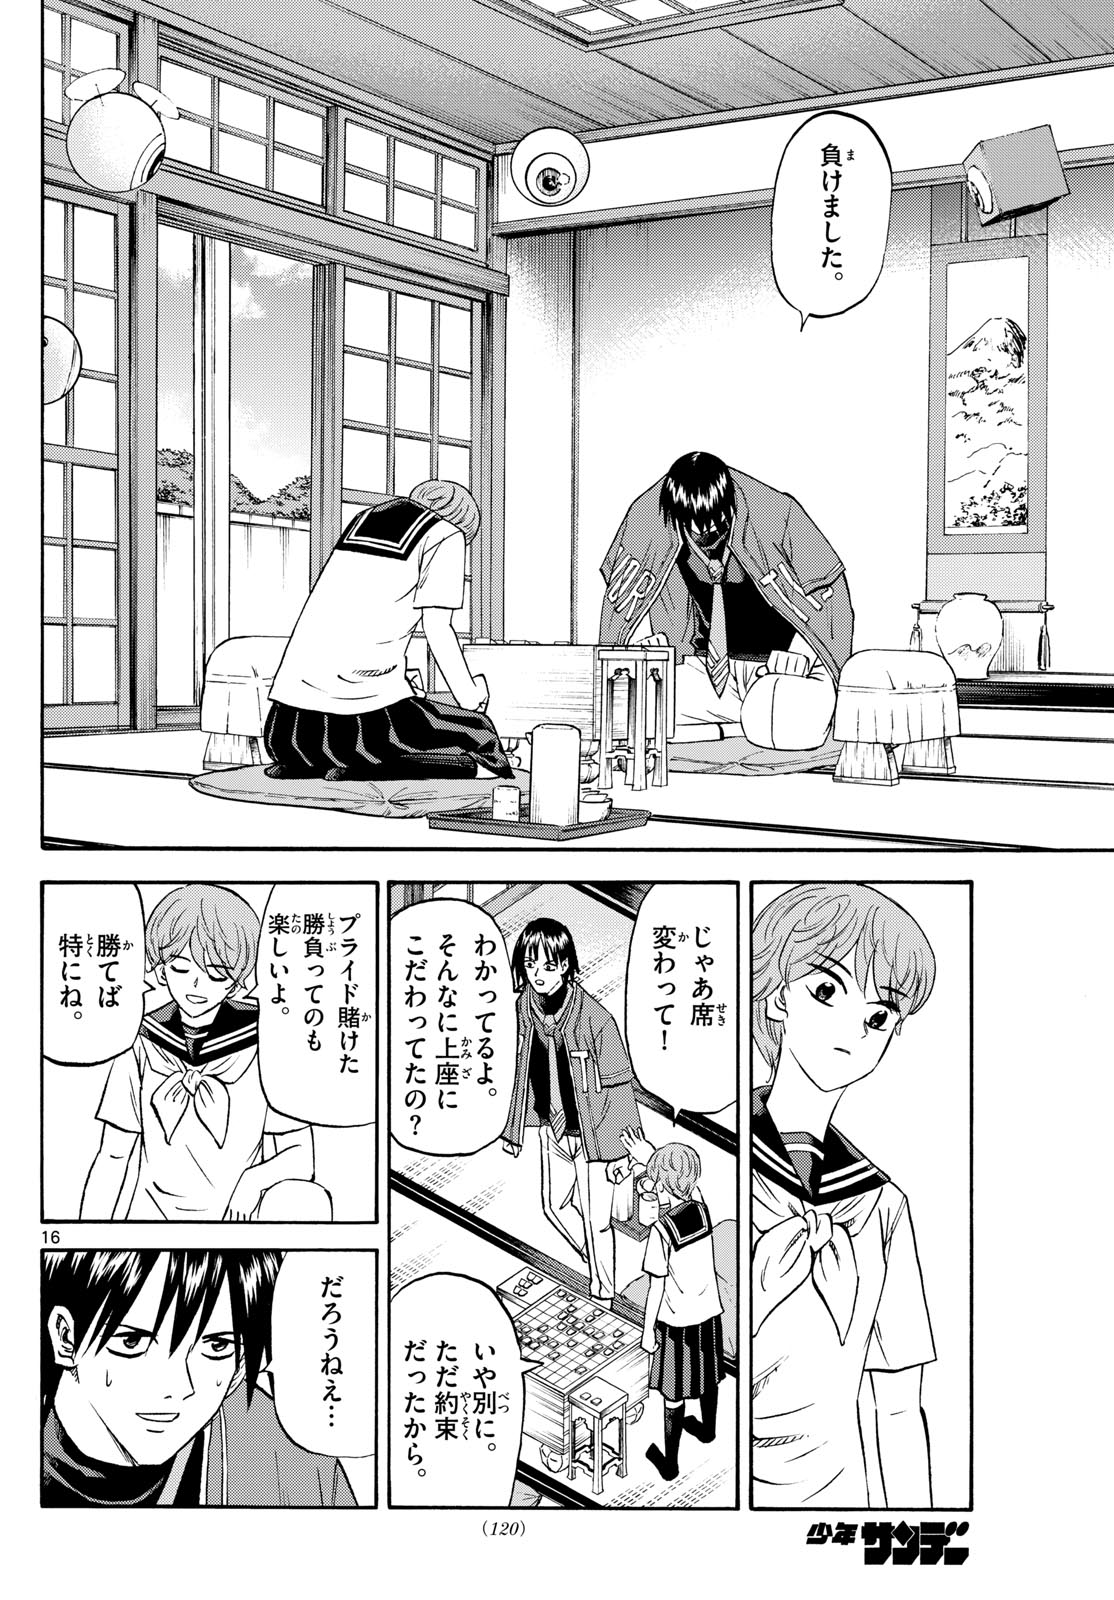 Tatsu to Ichigo - Chapter 198 - Page 16